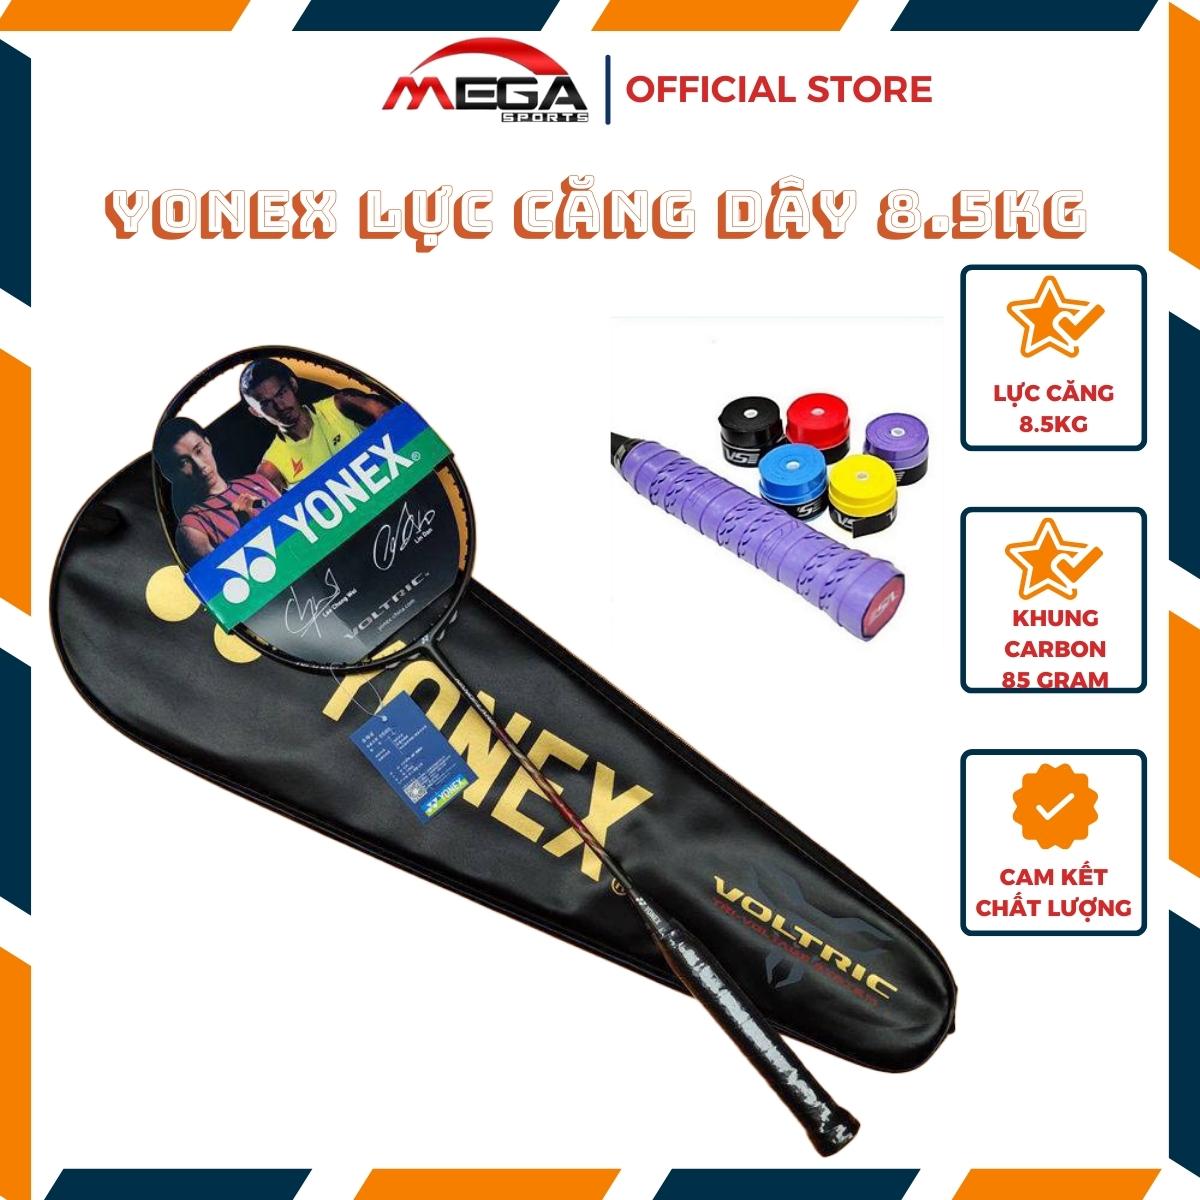 Vợt cầu lông Y0NEX giá rẻ cho người mới tập chơi, lực căng dây 8.5kg tặng bao vợt và quấn cán vợt (1 chiếc)